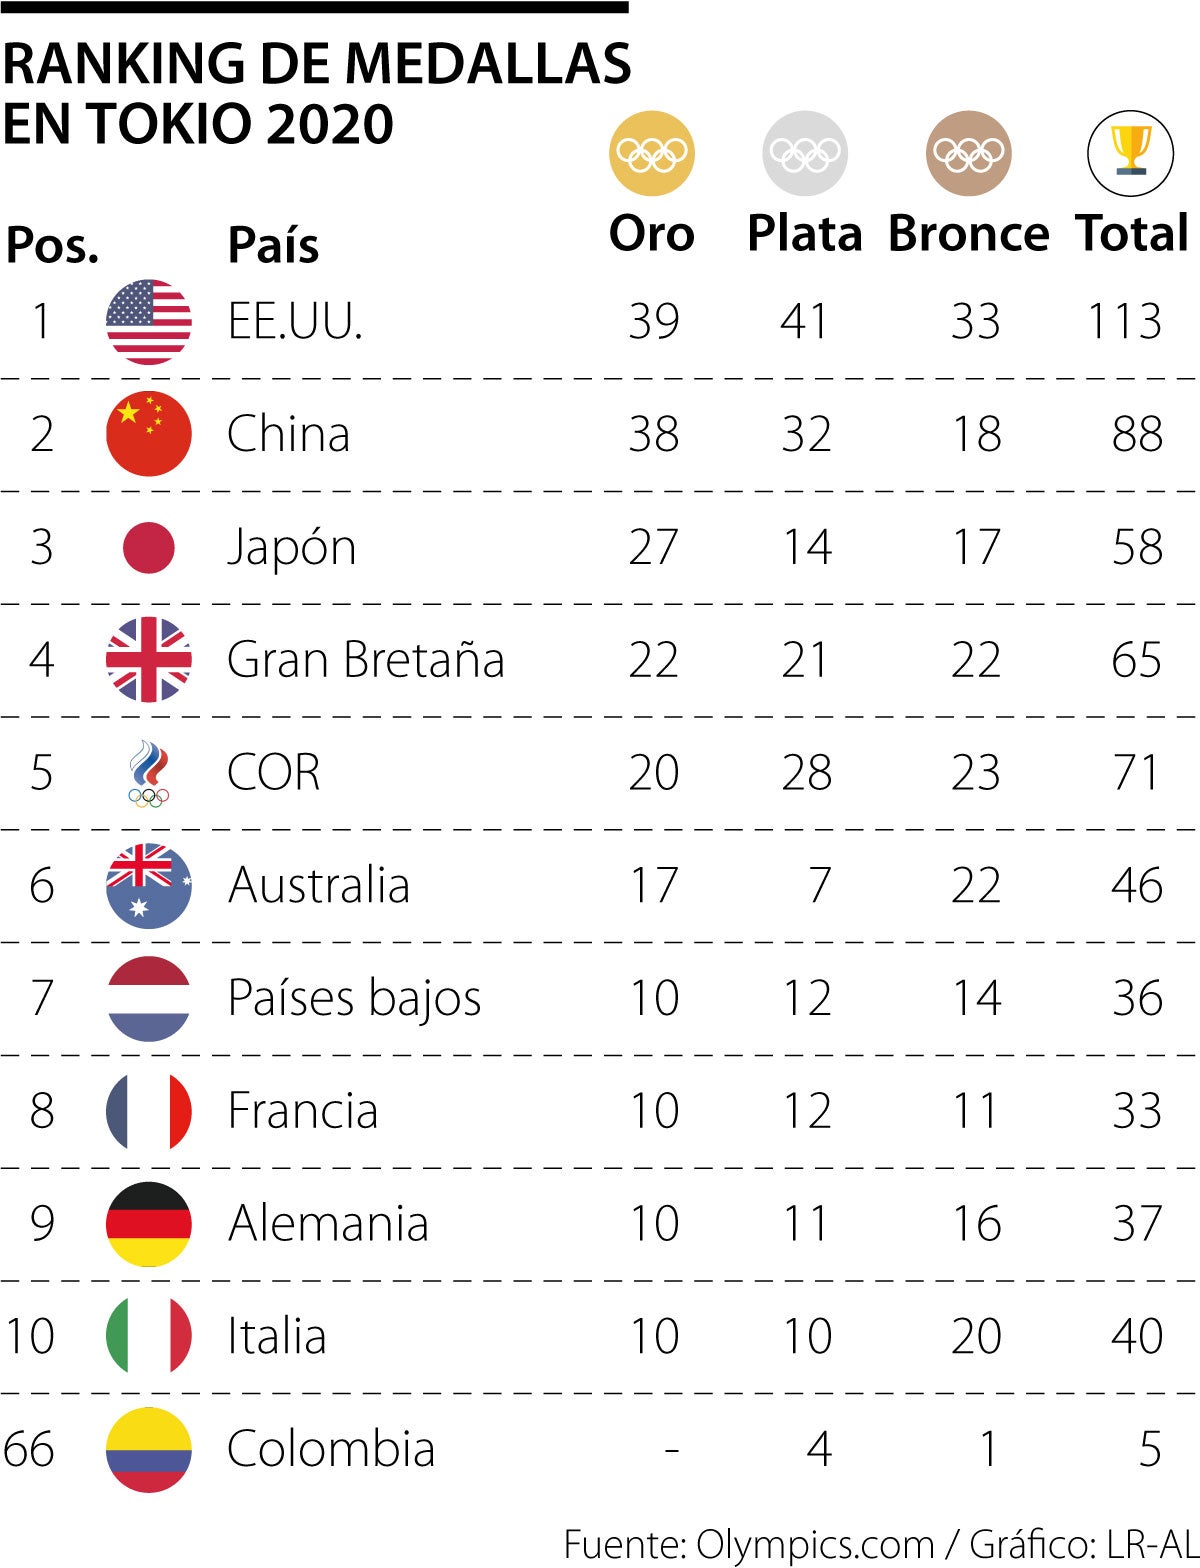 ¿Qué país tuvo más medallas en los ultimos Juegos Olímpicos?